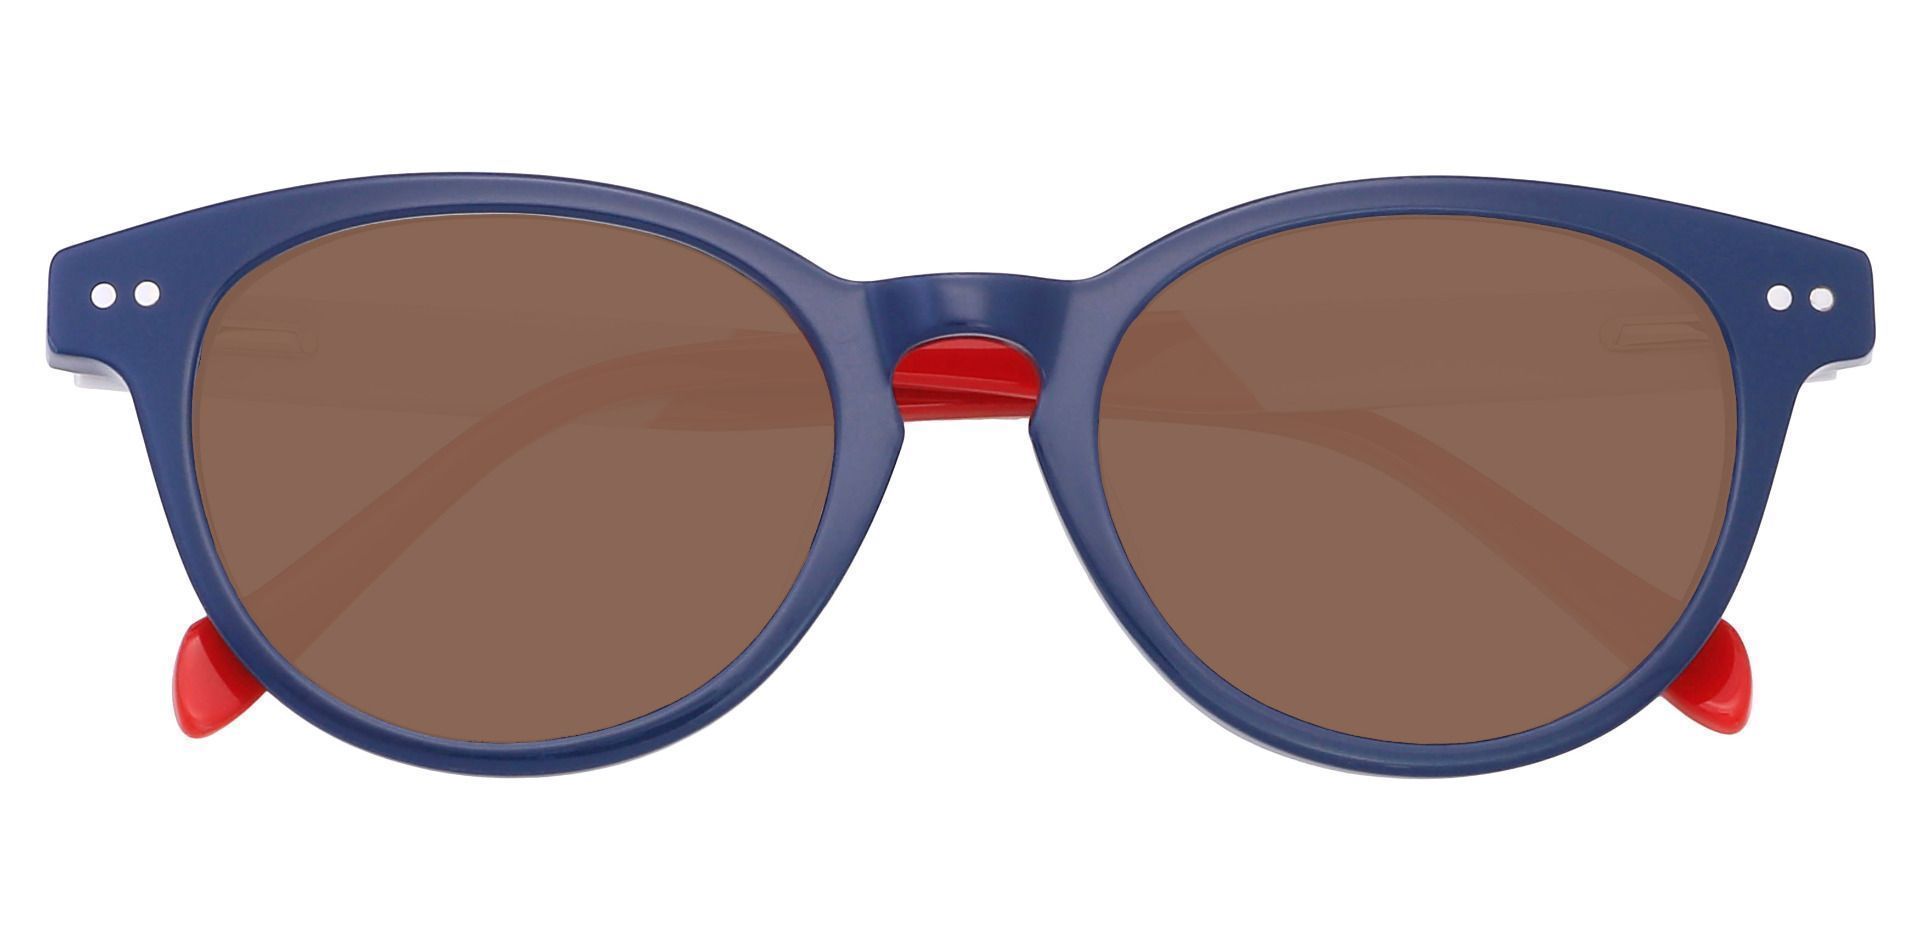 Revere Oval Progressive Sunglasses - Blue Frame With Brown Lenses